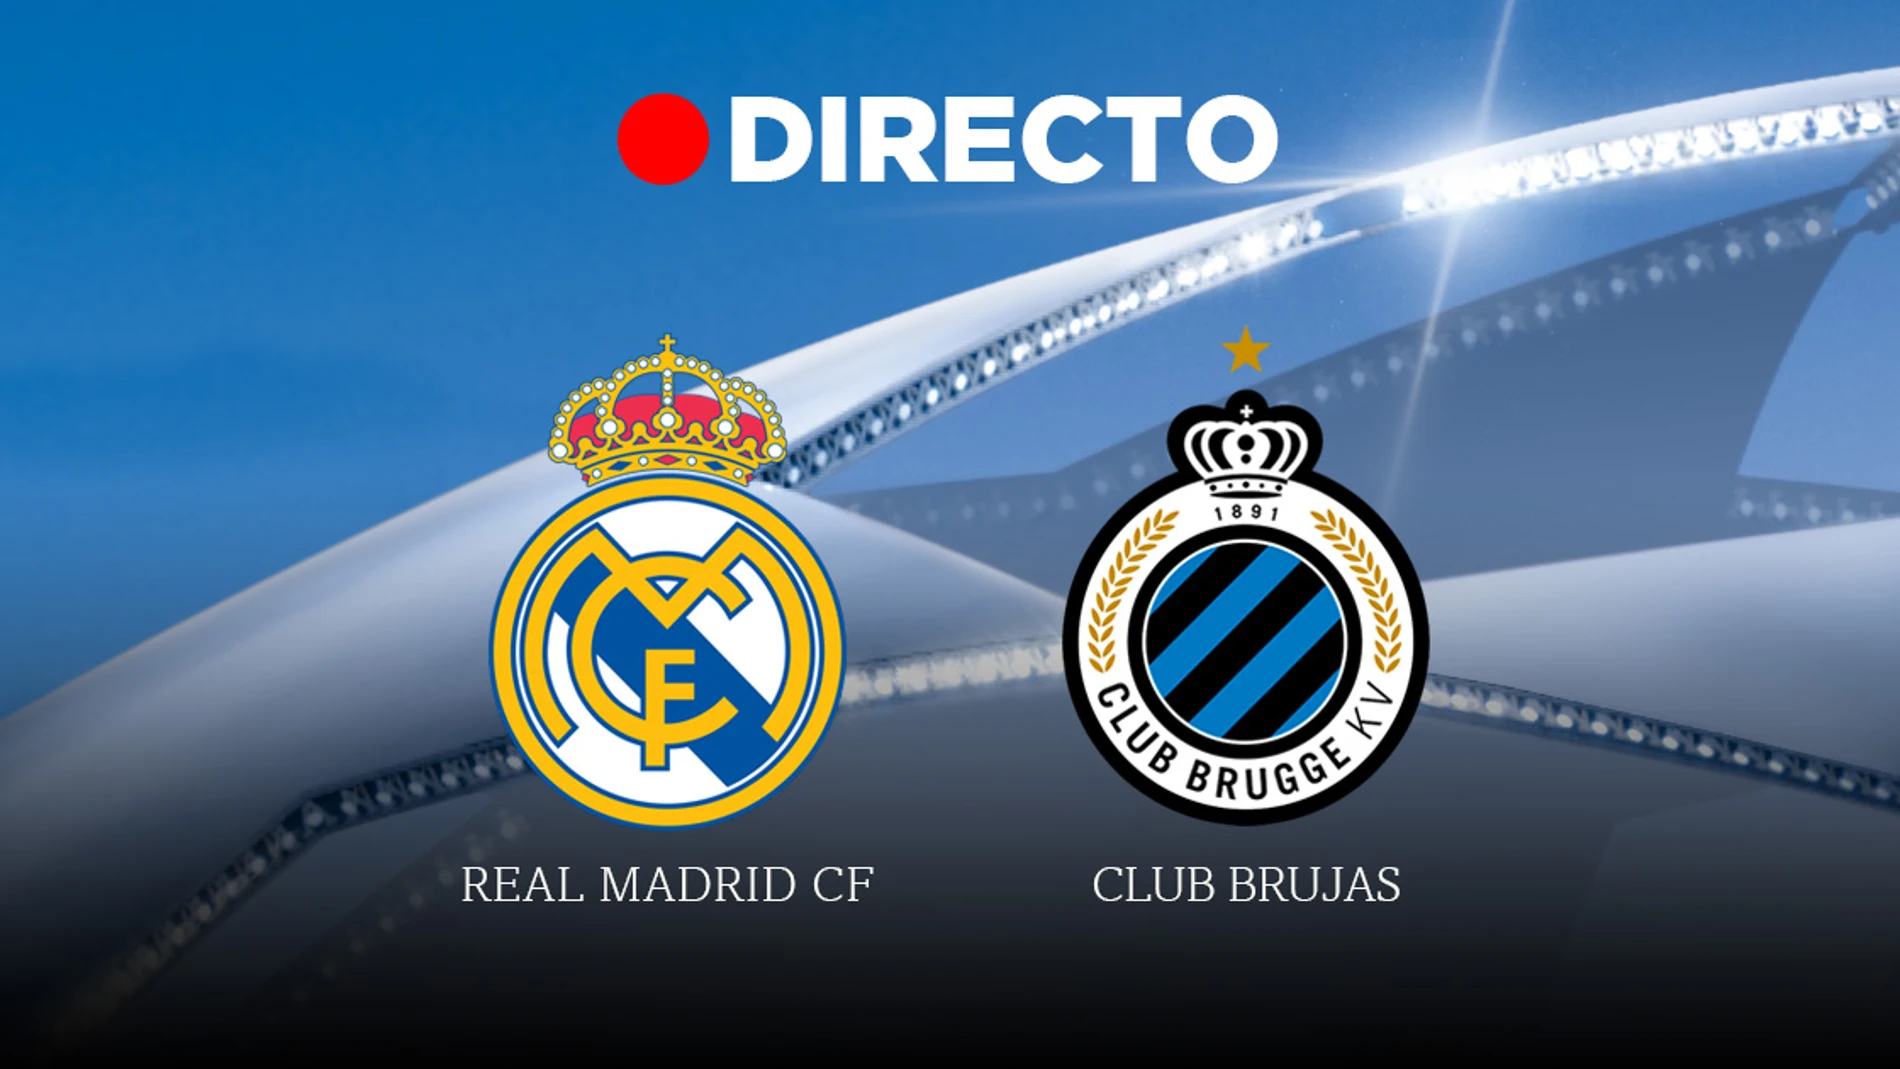 Real Madrid-Brujas, partido de la Champions League 2019/2020